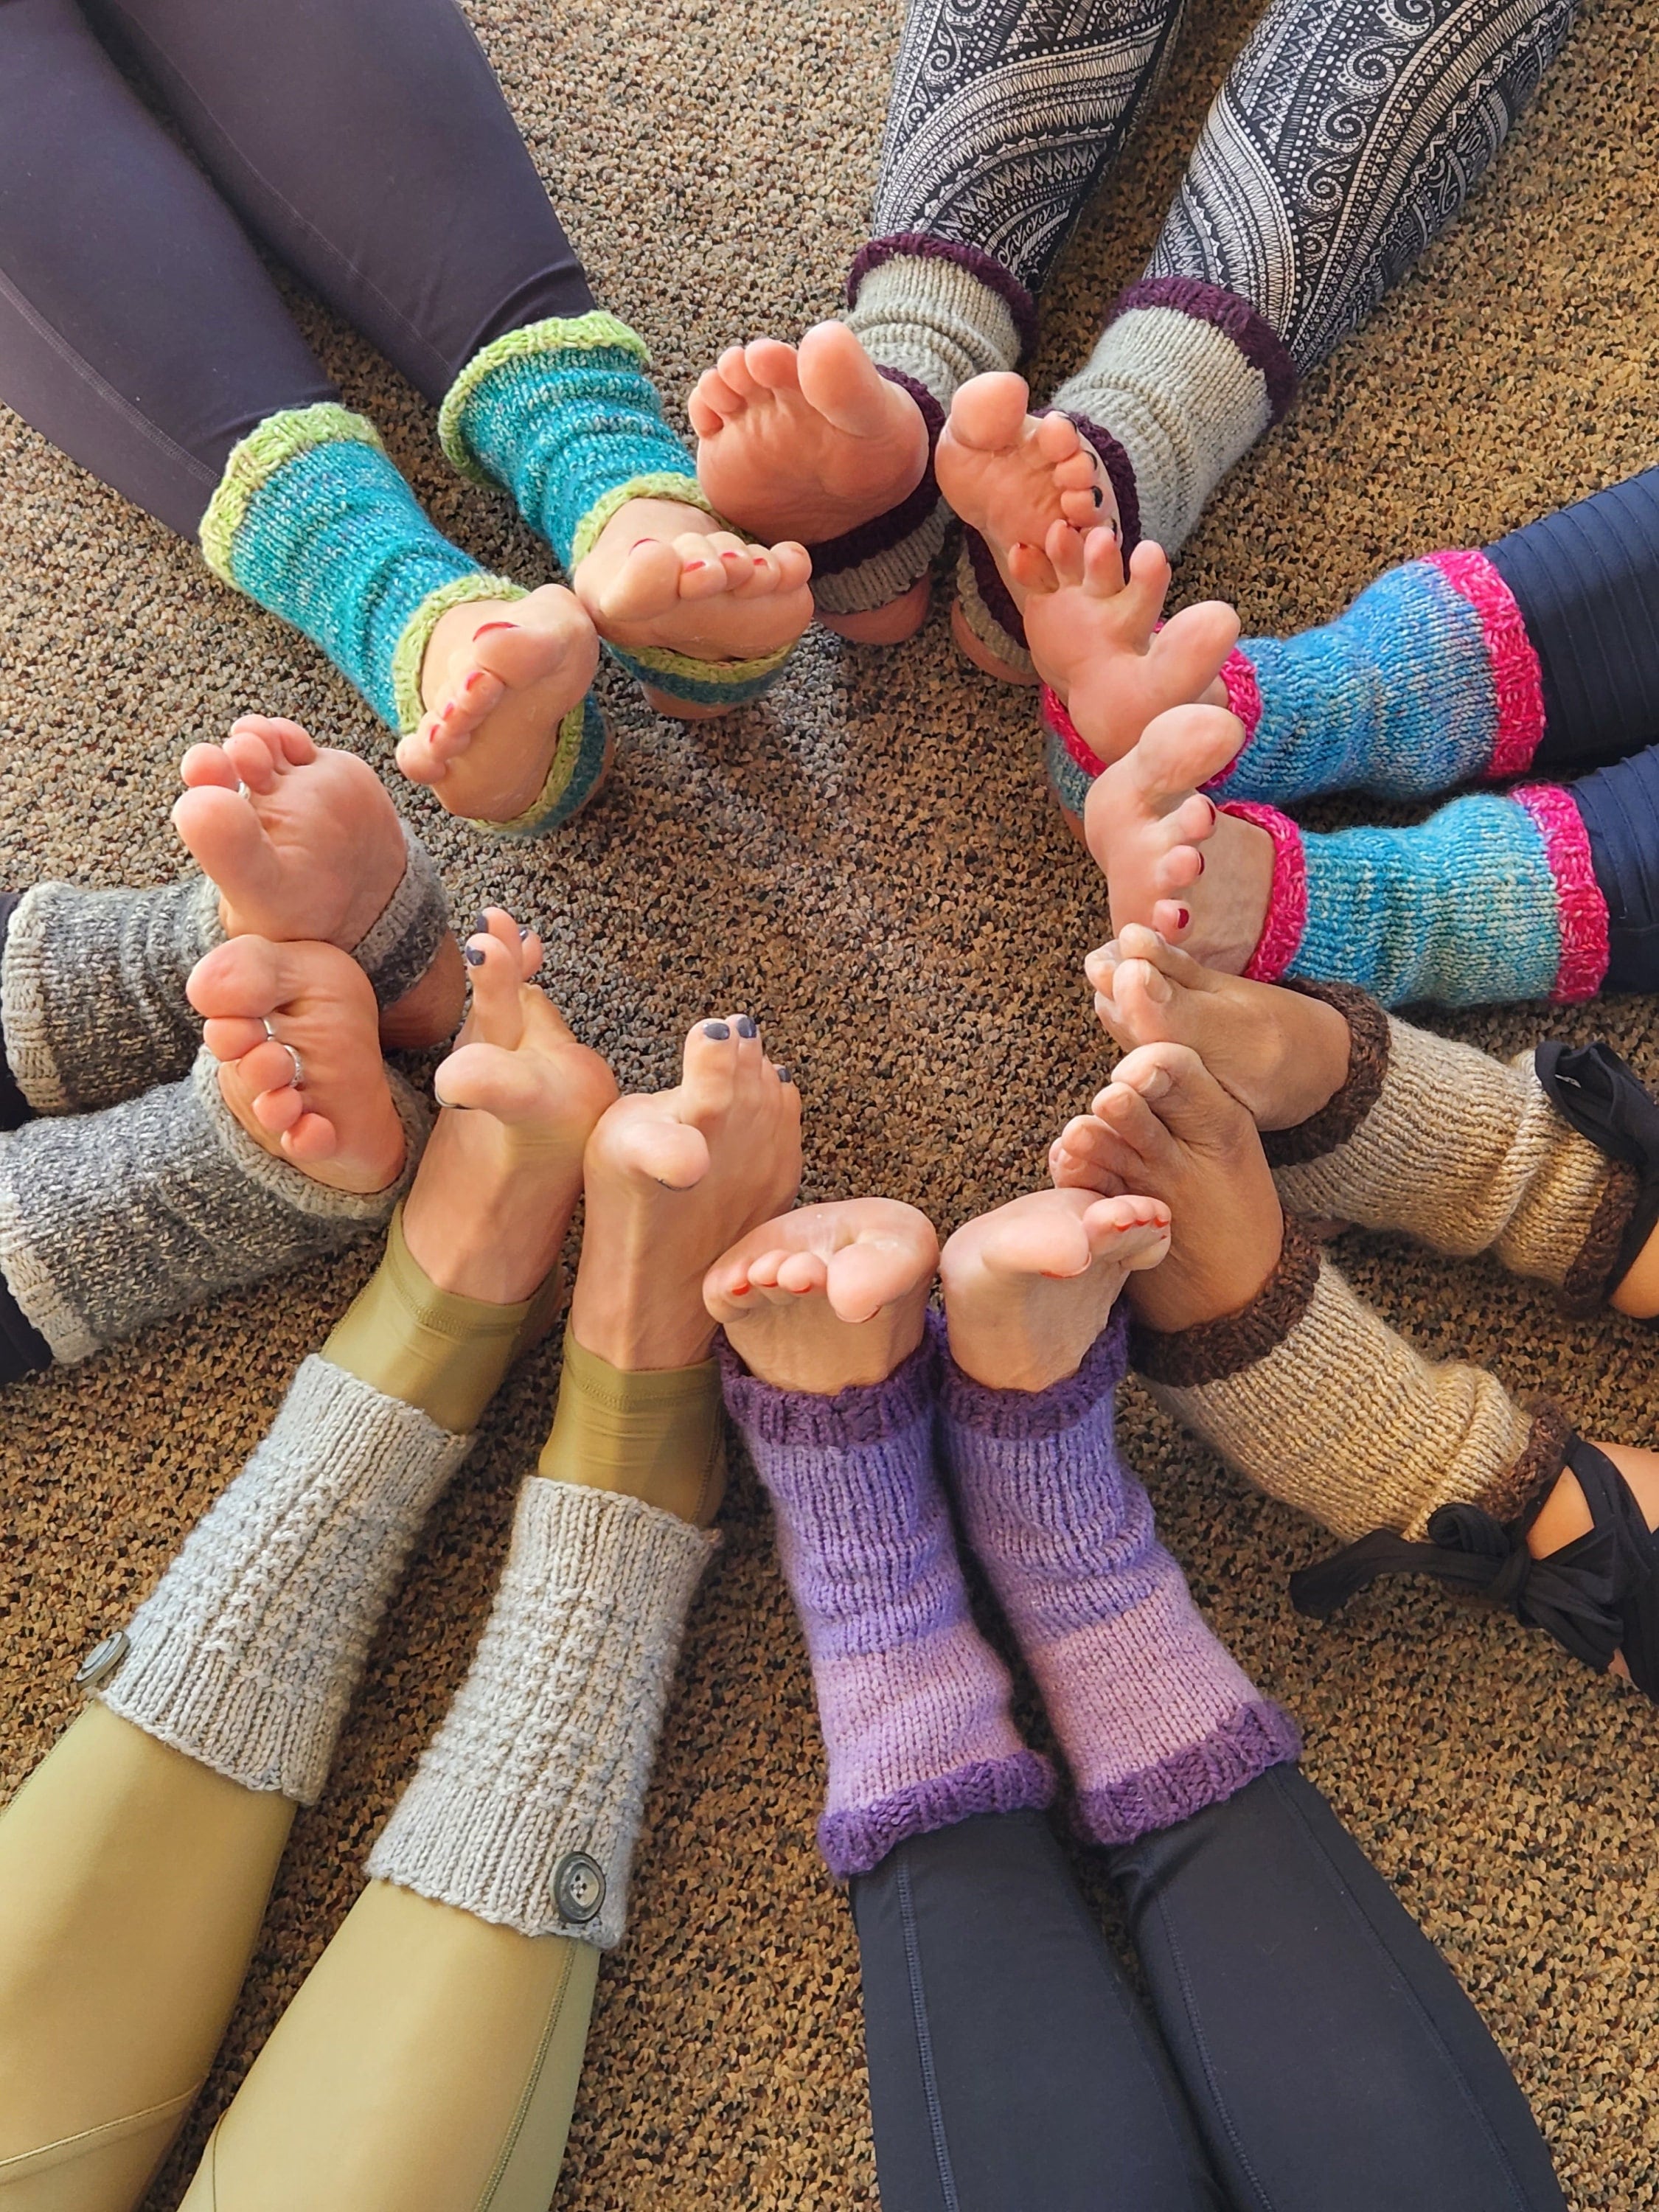 Ozaiic Yoga Socks for Women with Grips, Non-Slip Five Toe Socks for Pilates,  Barre, Ballet, Fitness, Socks -  Canada